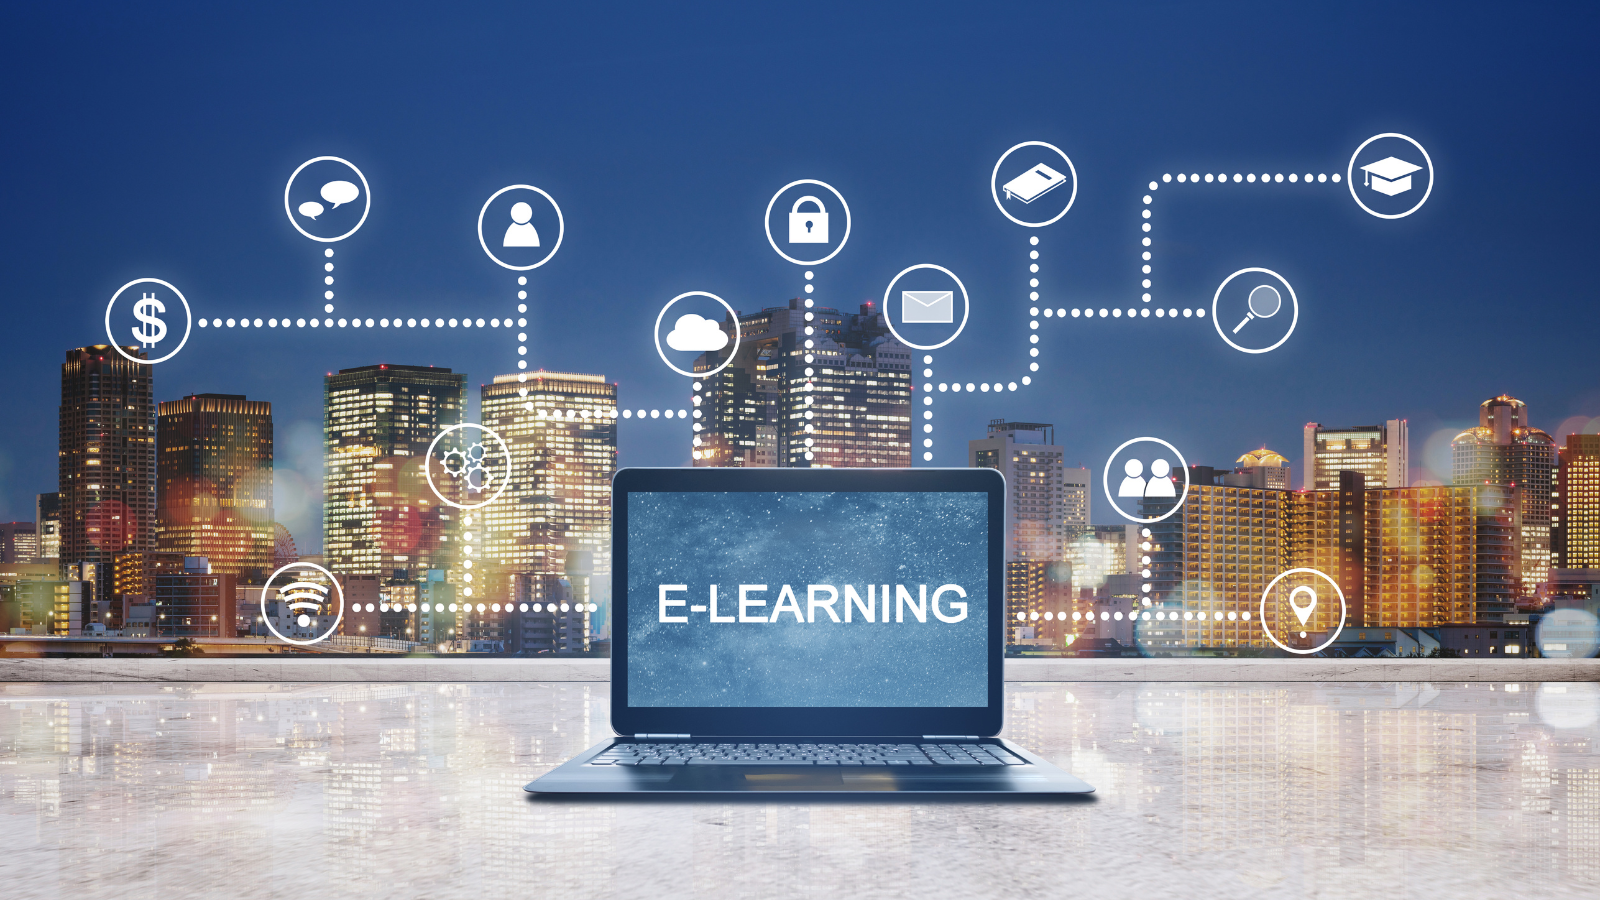 5 Best Tools for Converting VILT/ILT to E-learning